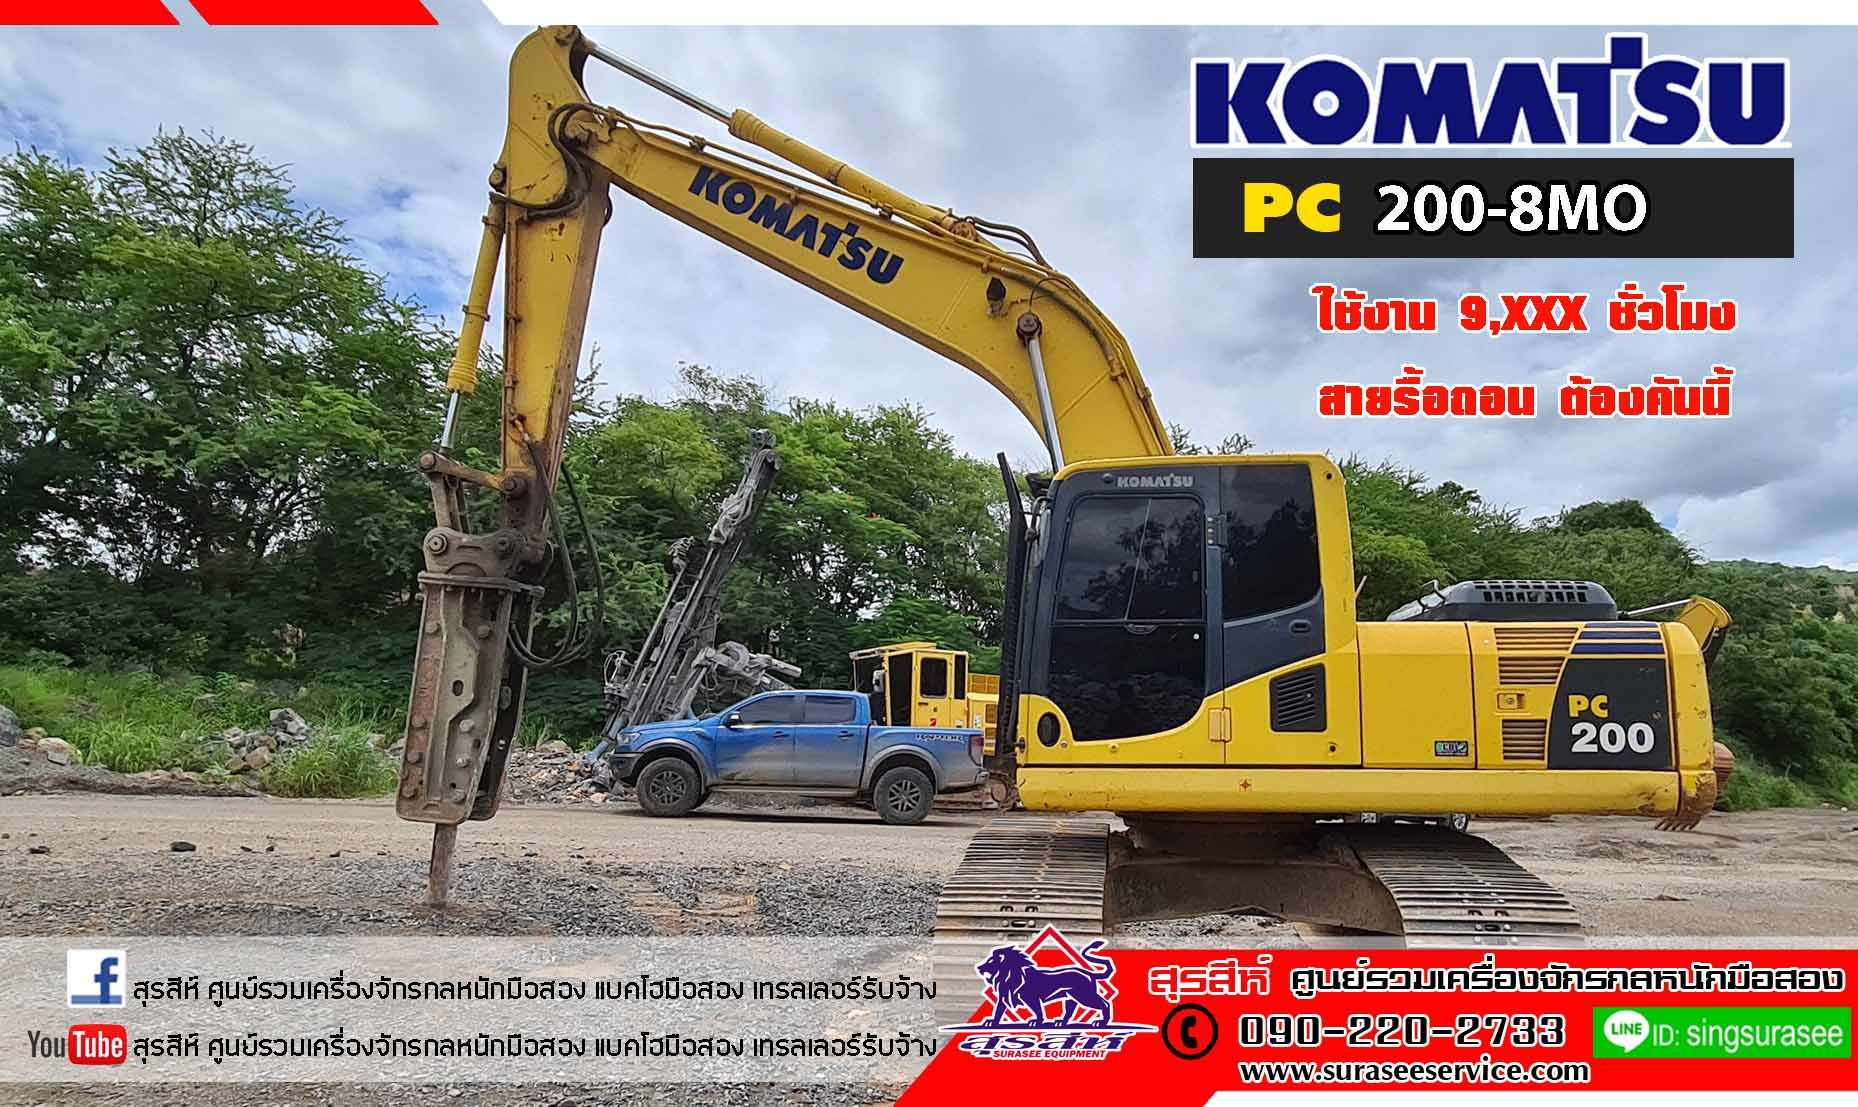 ขาย KOMATSU PC200-8MO ใช้งาน 9,xxx ชม. 